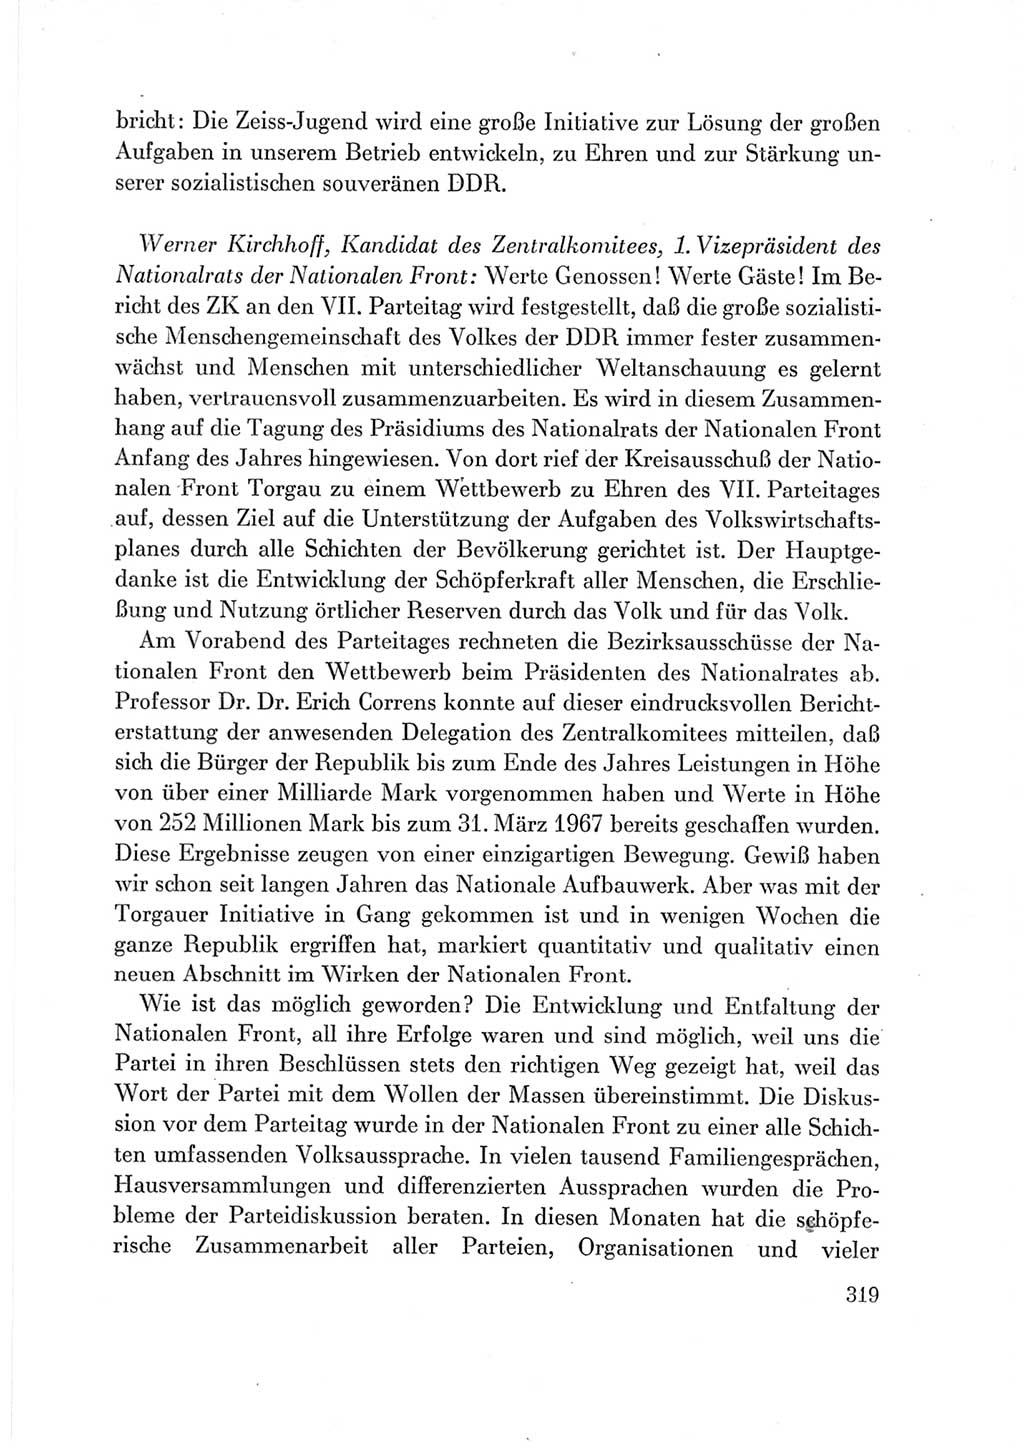 Protokoll der Verhandlungen des Ⅶ. Parteitages der Sozialistischen Einheitspartei Deutschlands (SED) [Deutsche Demokratische Republik (DDR)] 1967, Band Ⅲ, Seite 319 (Prot. Verh. Ⅶ. PT SED DDR 1967, Bd. Ⅲ, S. 319)